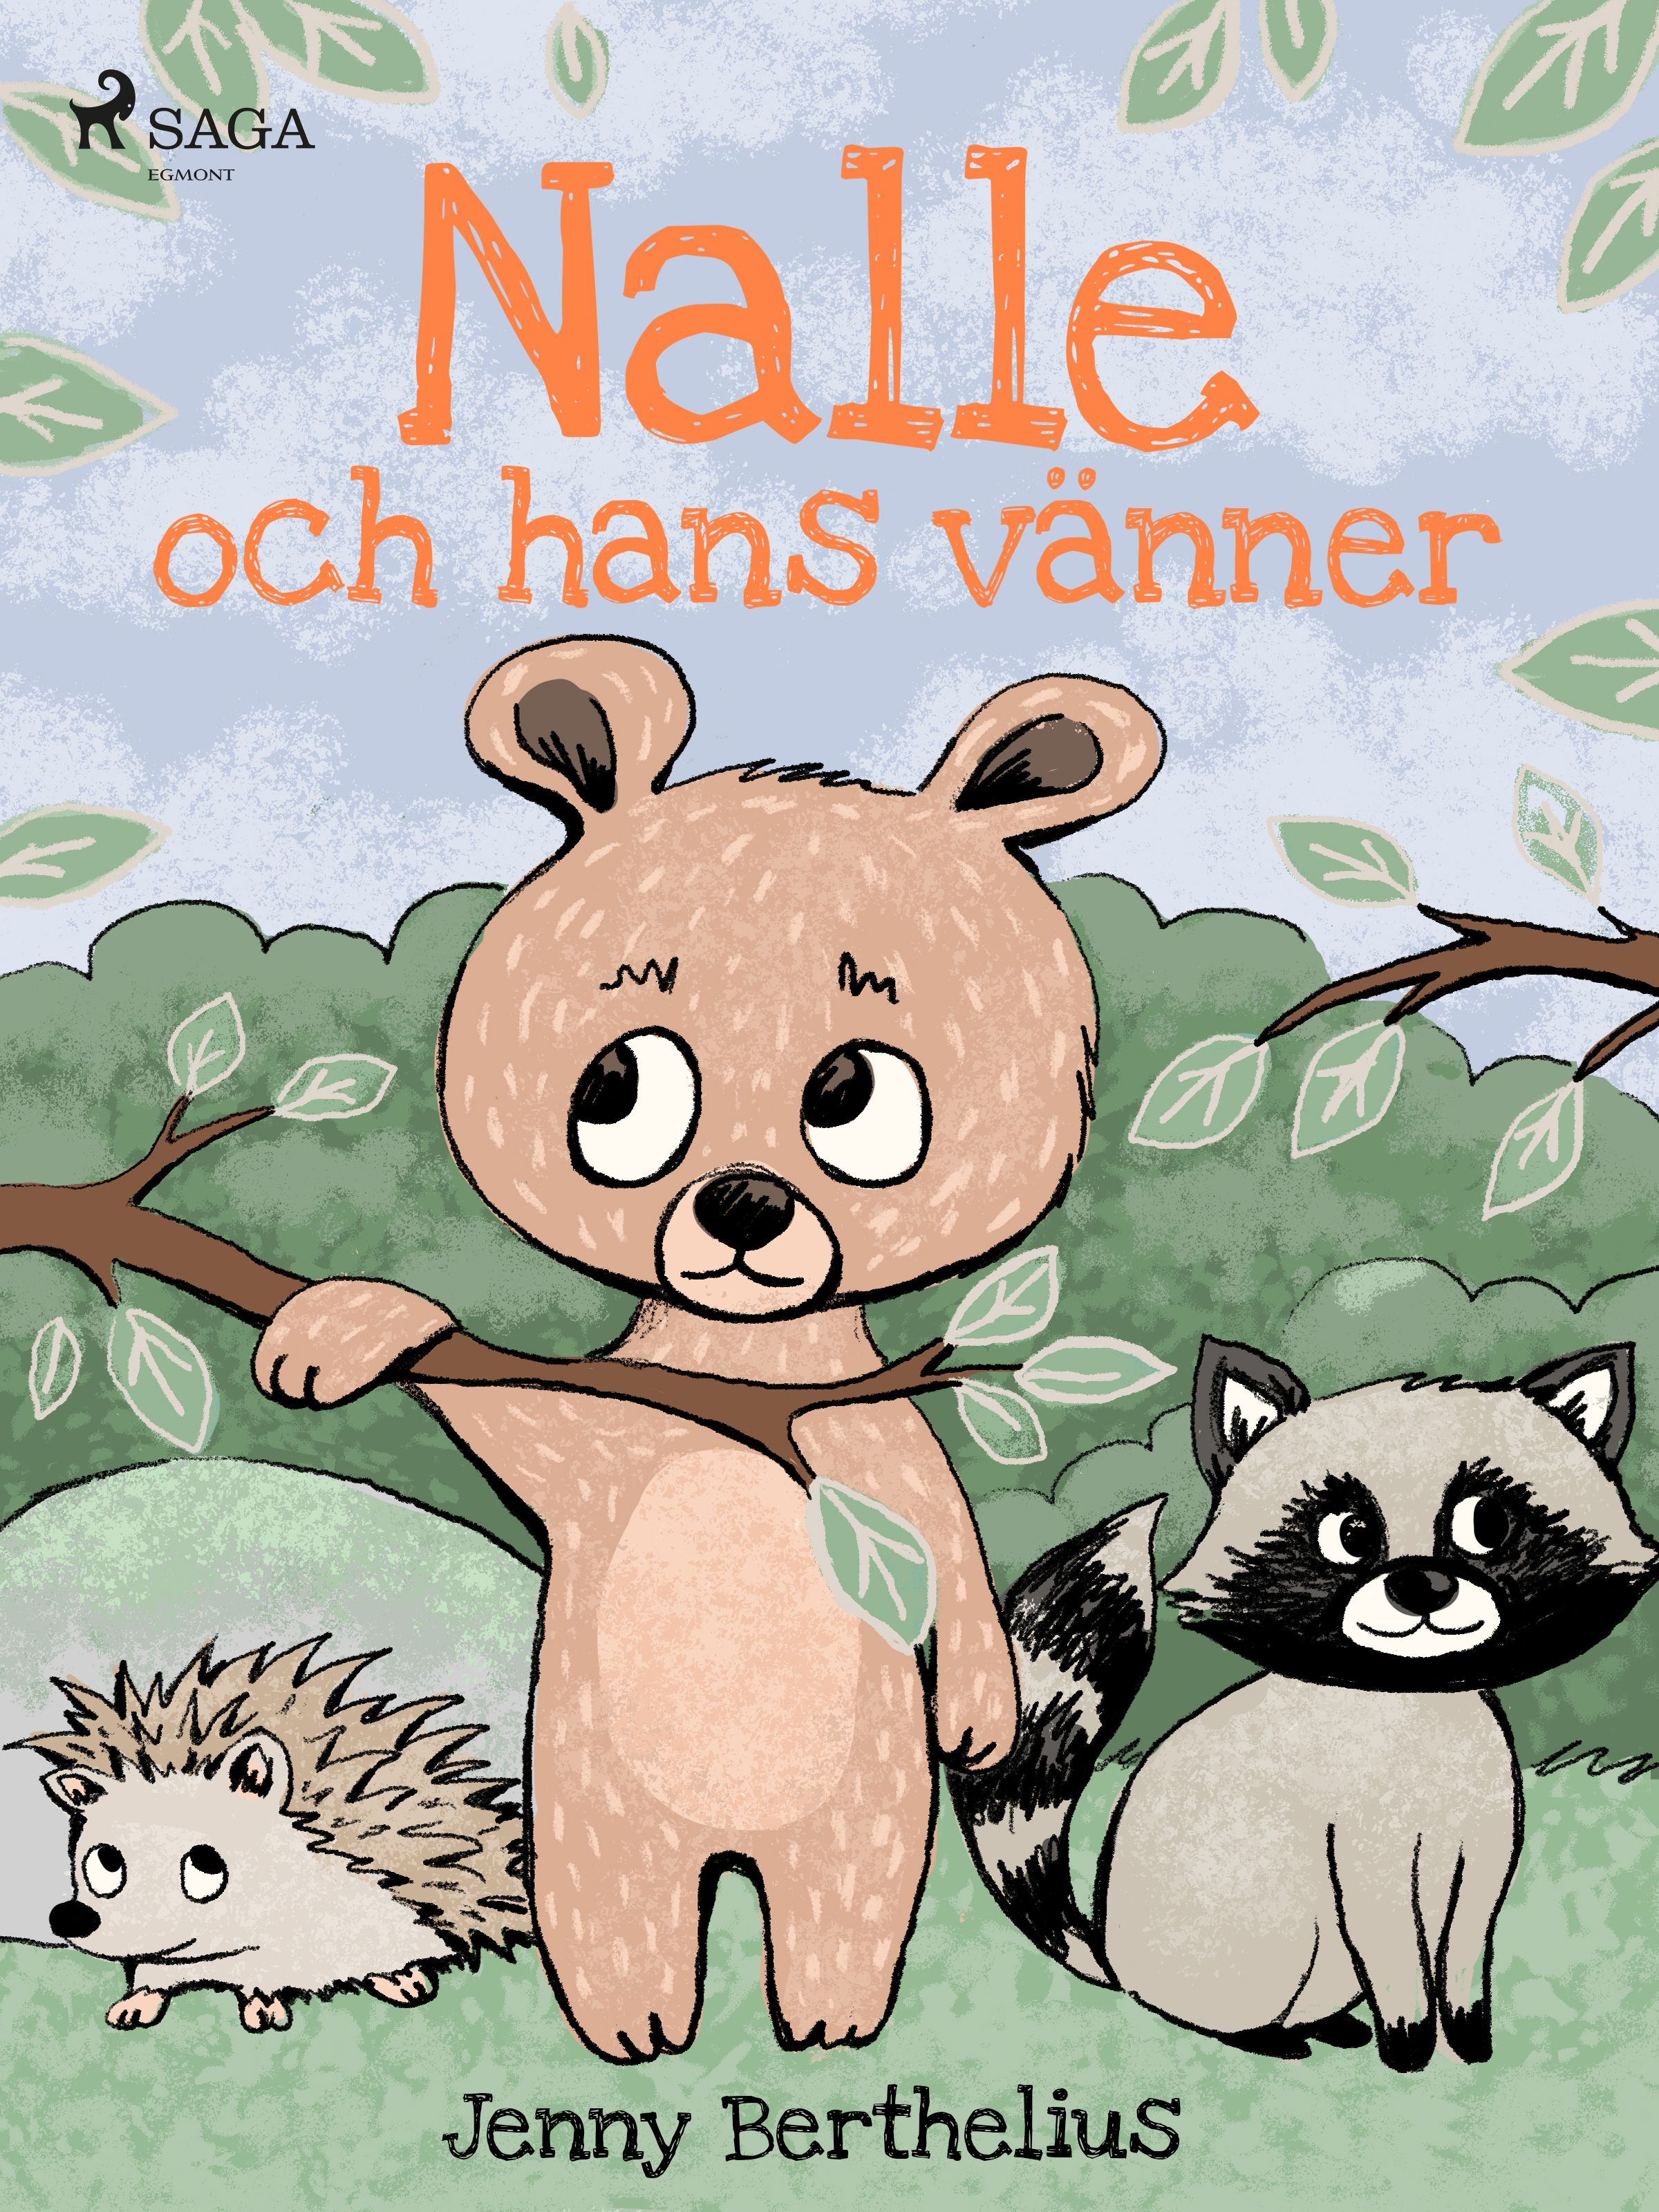 Nalle och hans vänner, e-bok av Jenny Berthelius